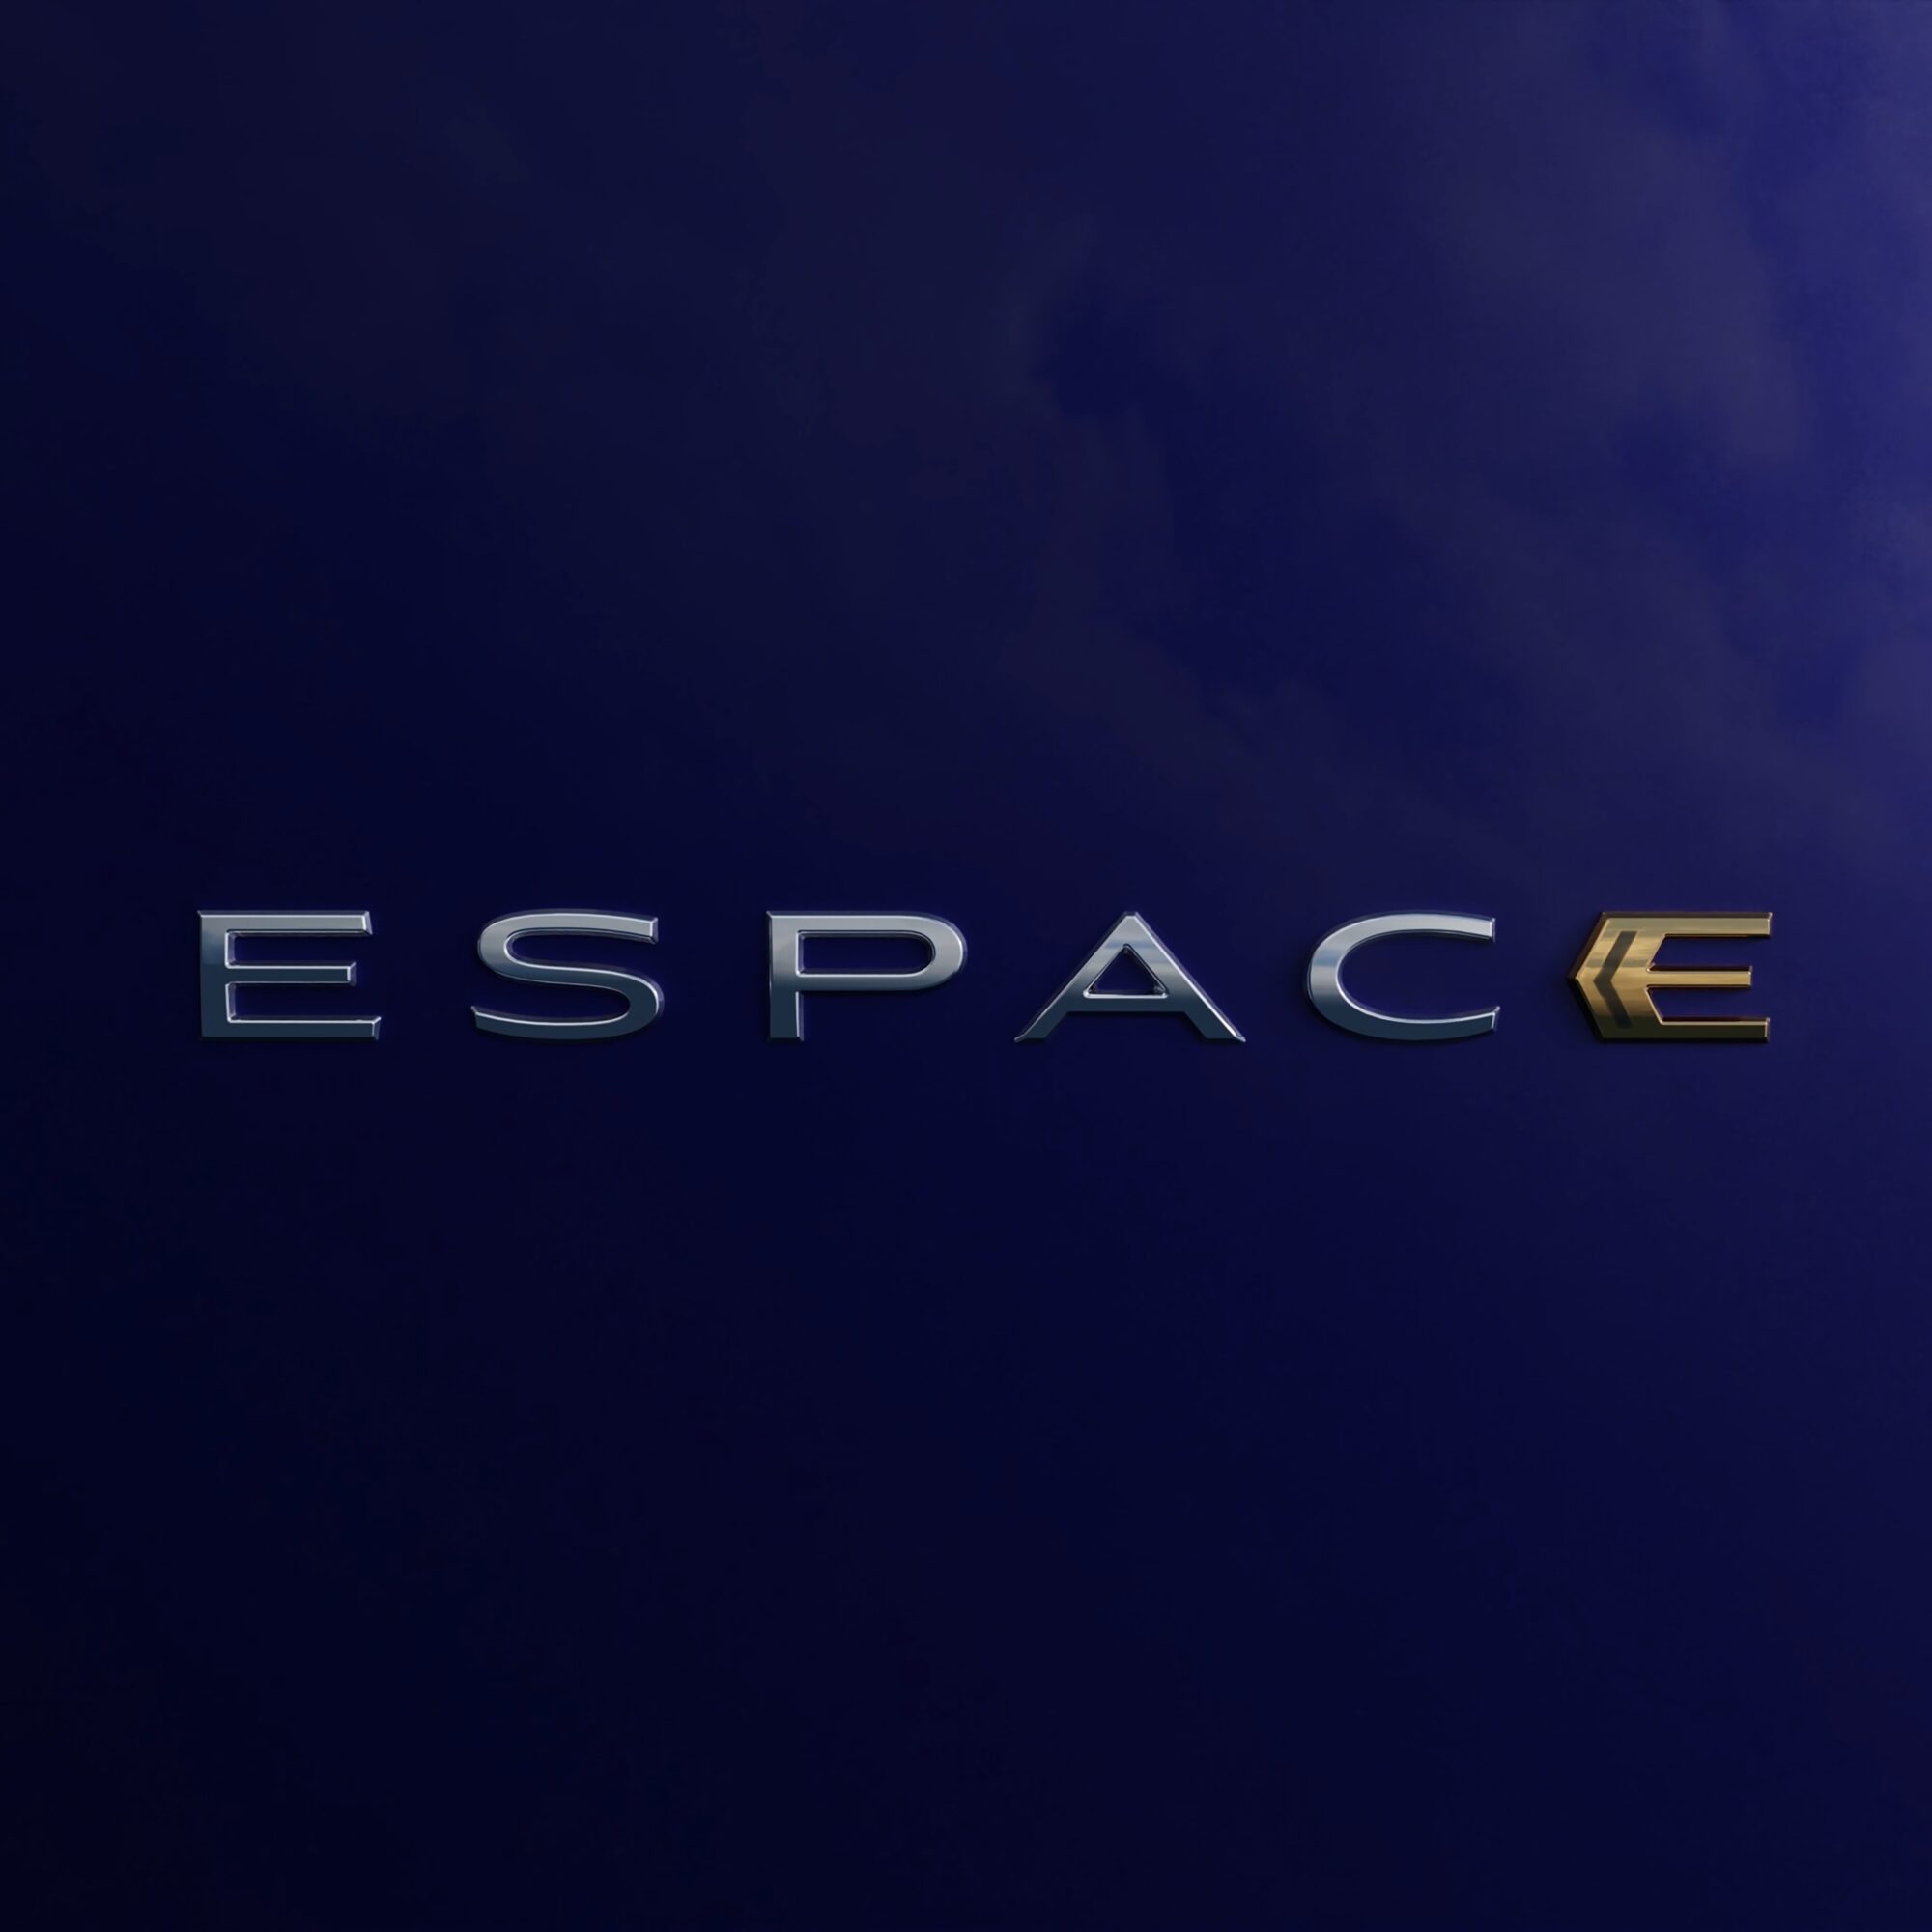 New Espace